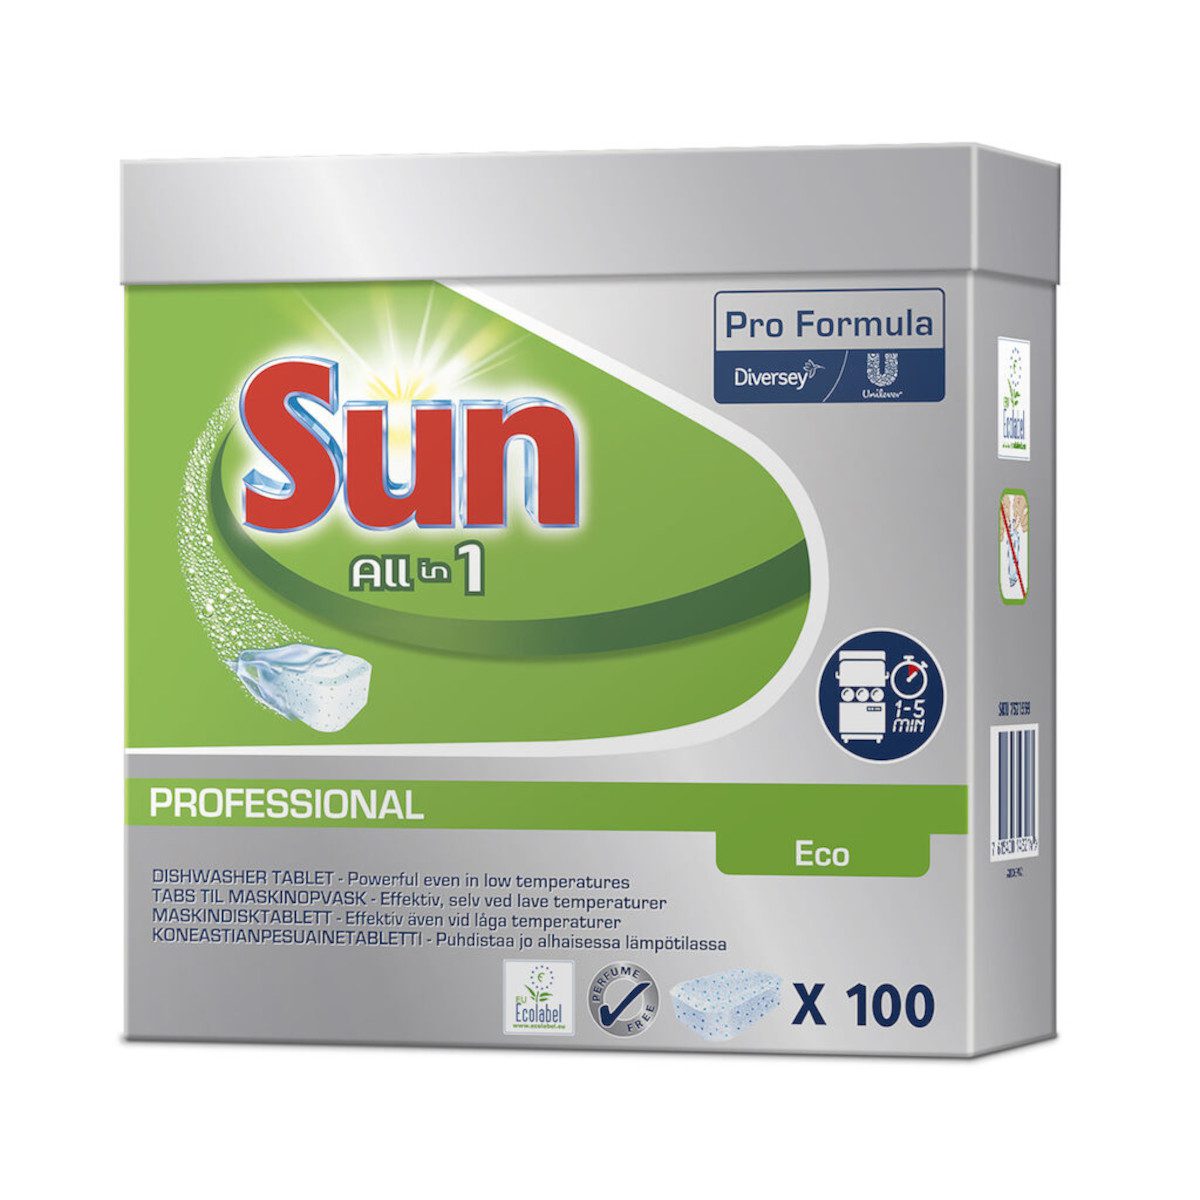 Sun Pro Formula All in 1 Eco tabletti